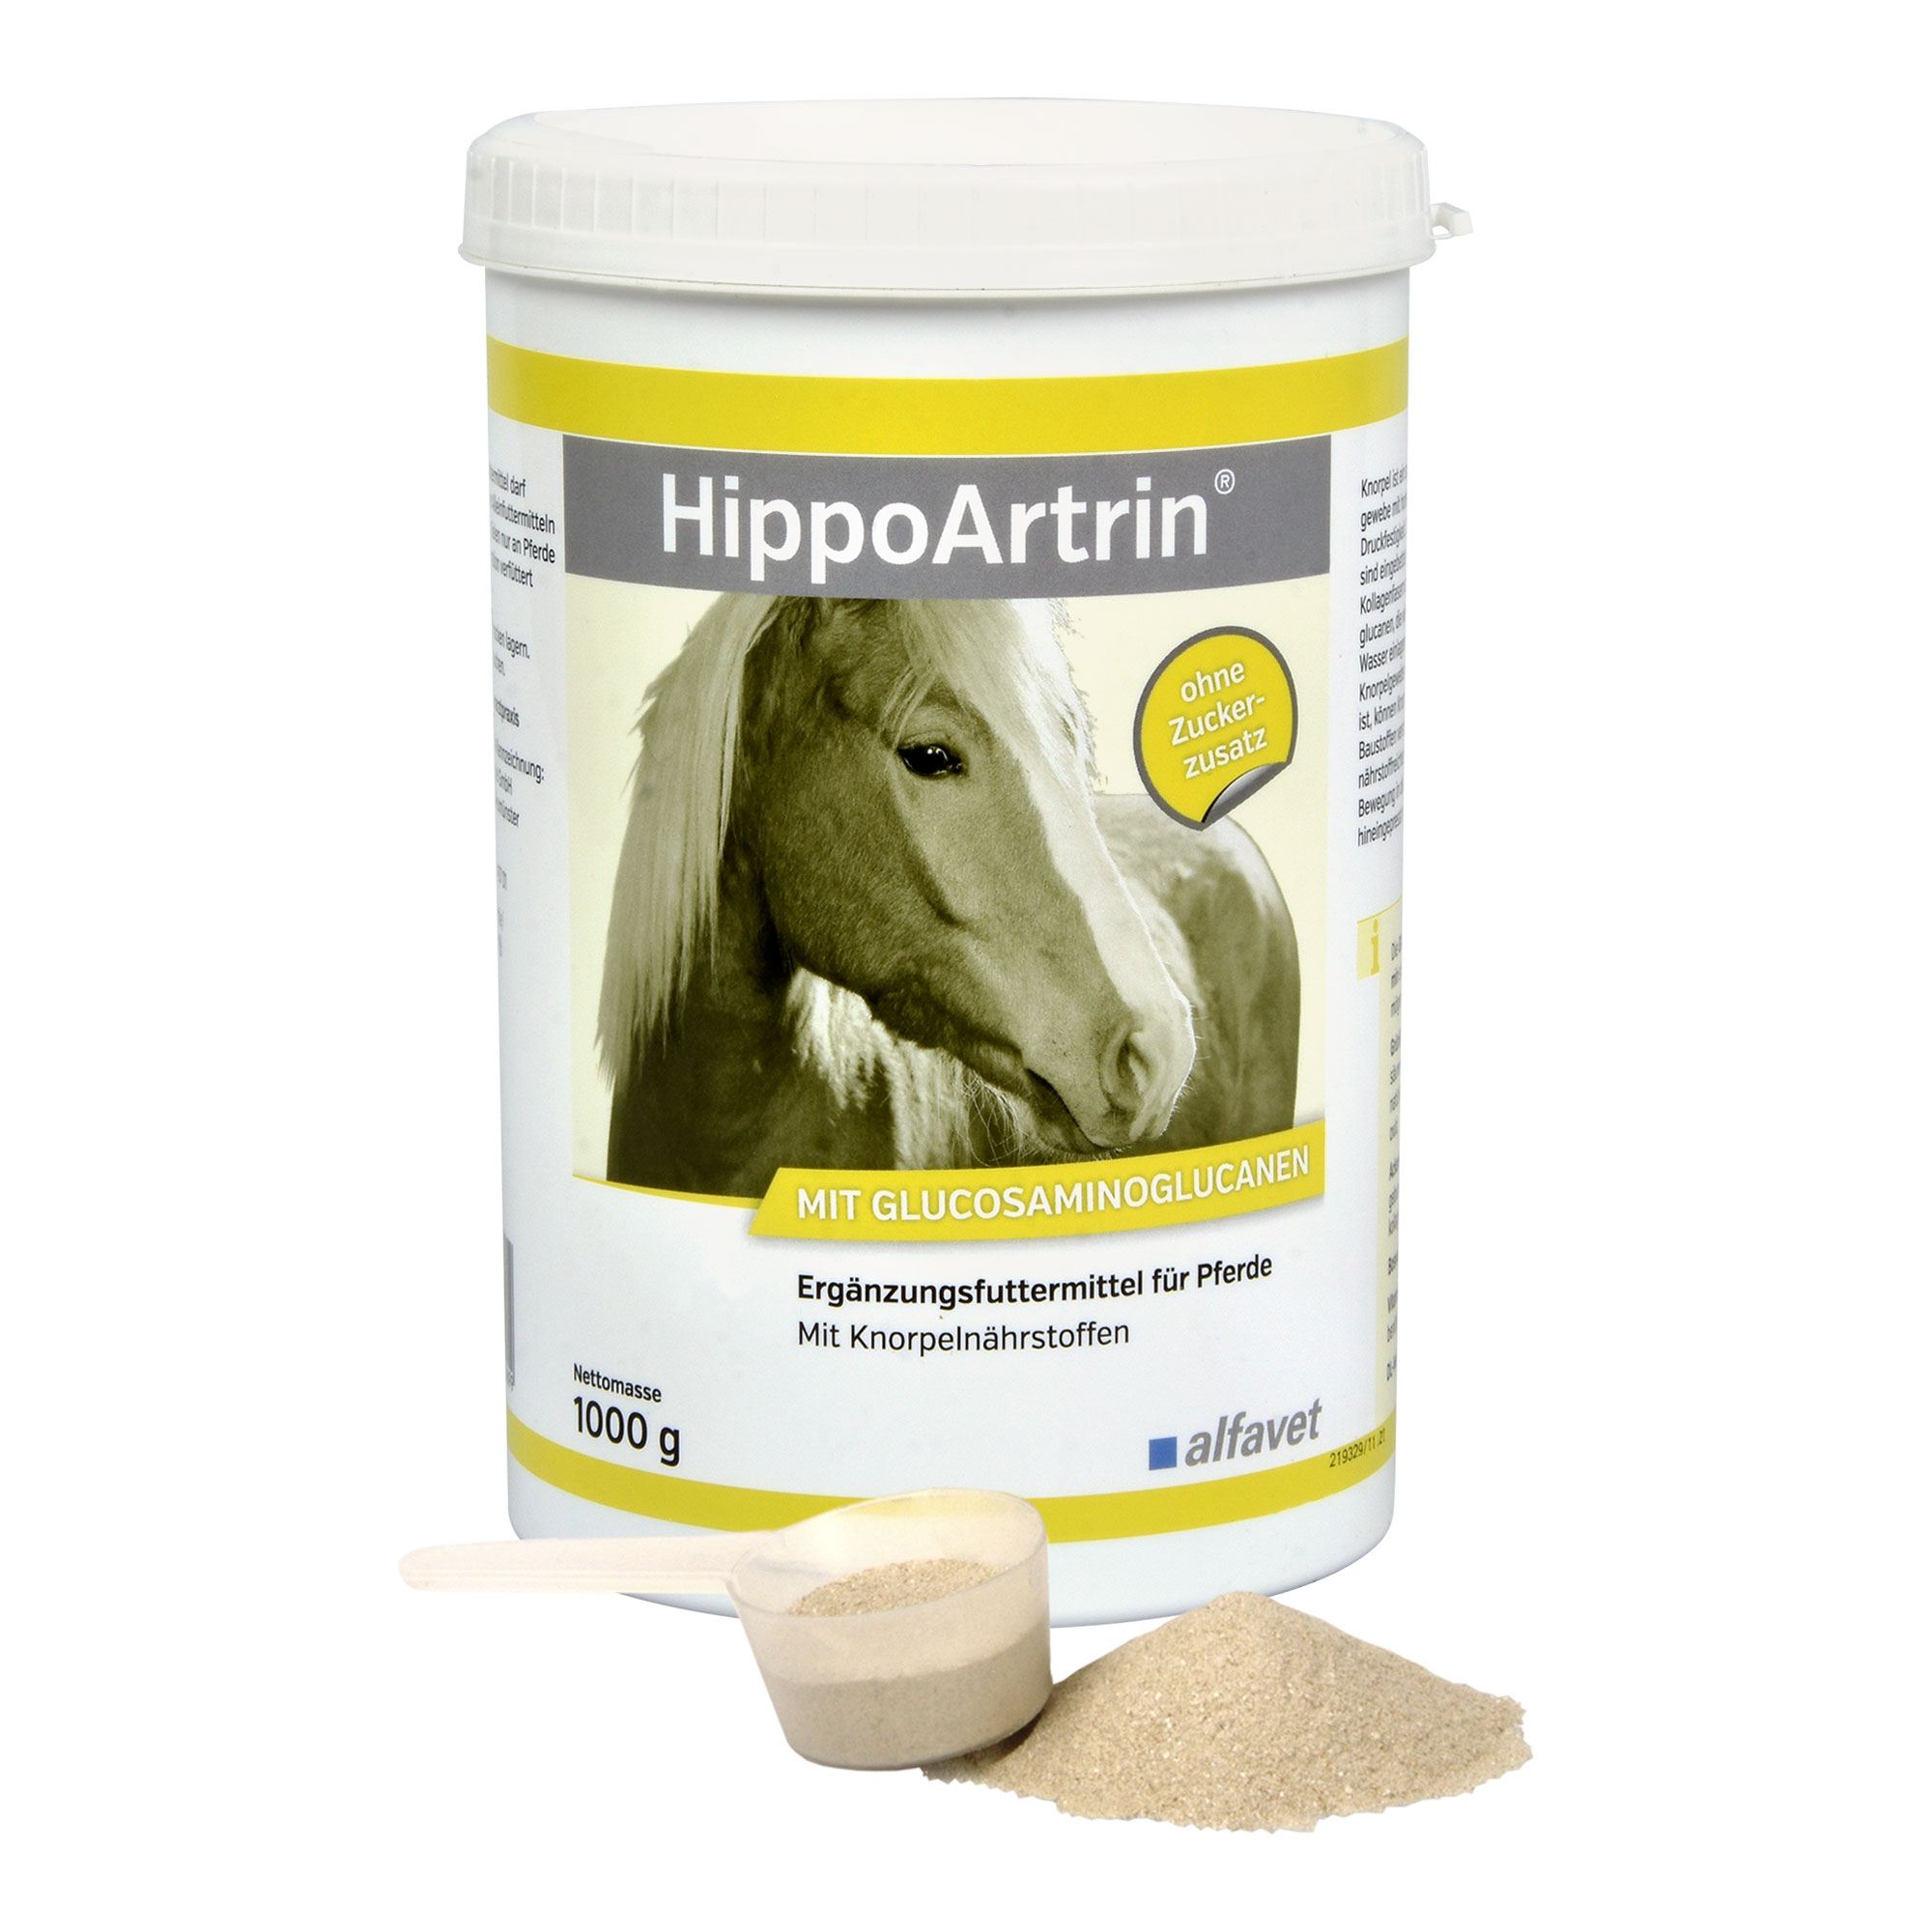 Ergänzungsfuttermittel für Pferde. Mit Knorpelnährstoffen.